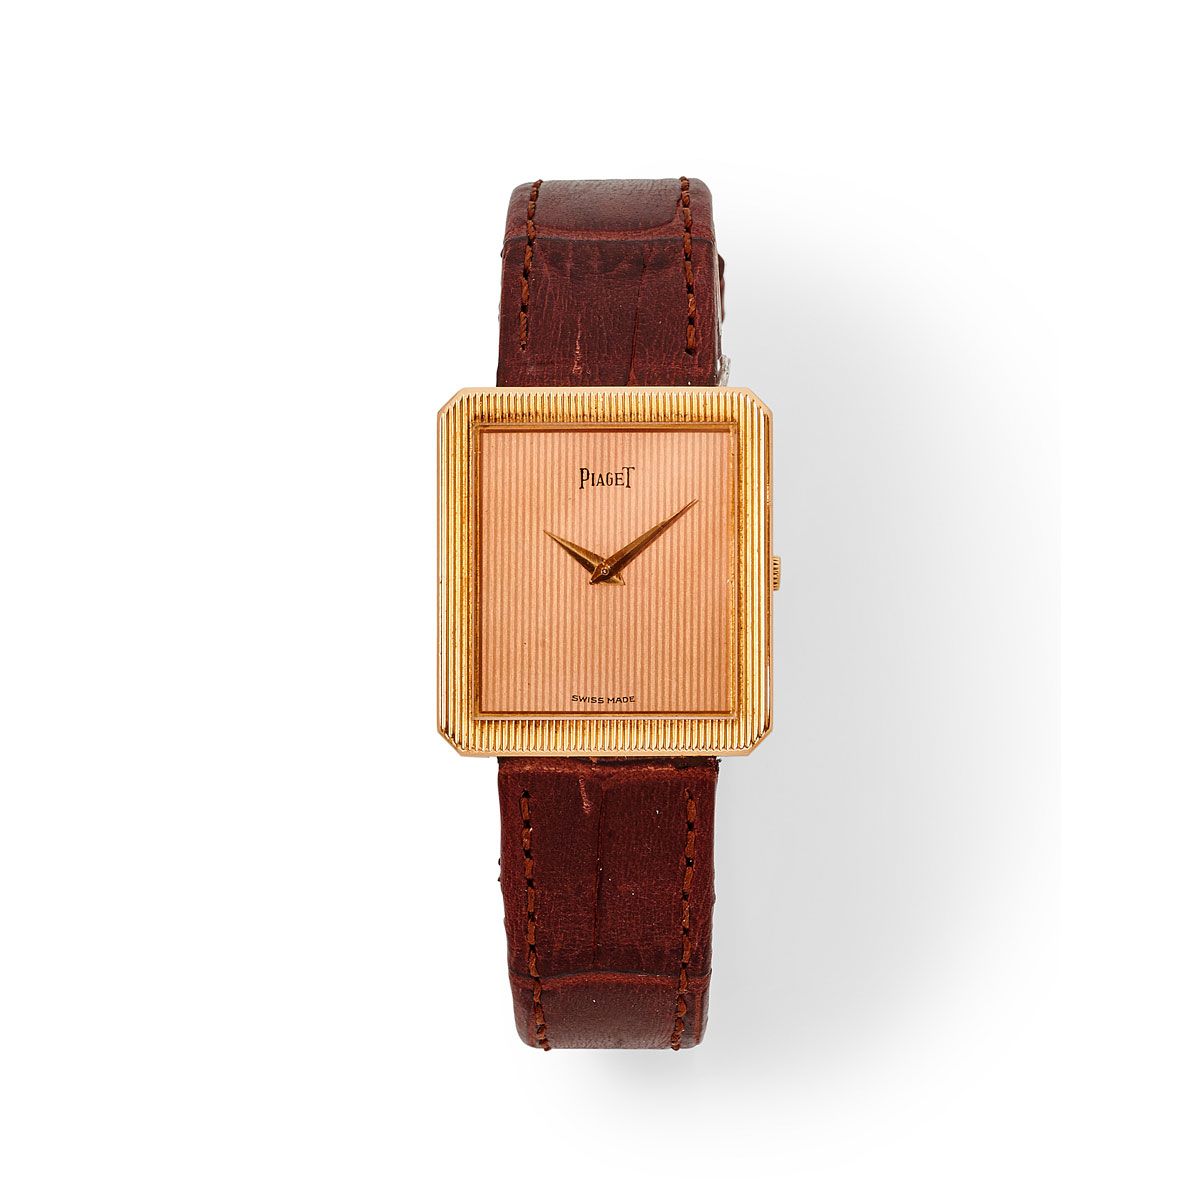 Null Piaget, Réf. 9154, n° 122757, vers 1975.

Une belle montre rectangulaire en&hellip;